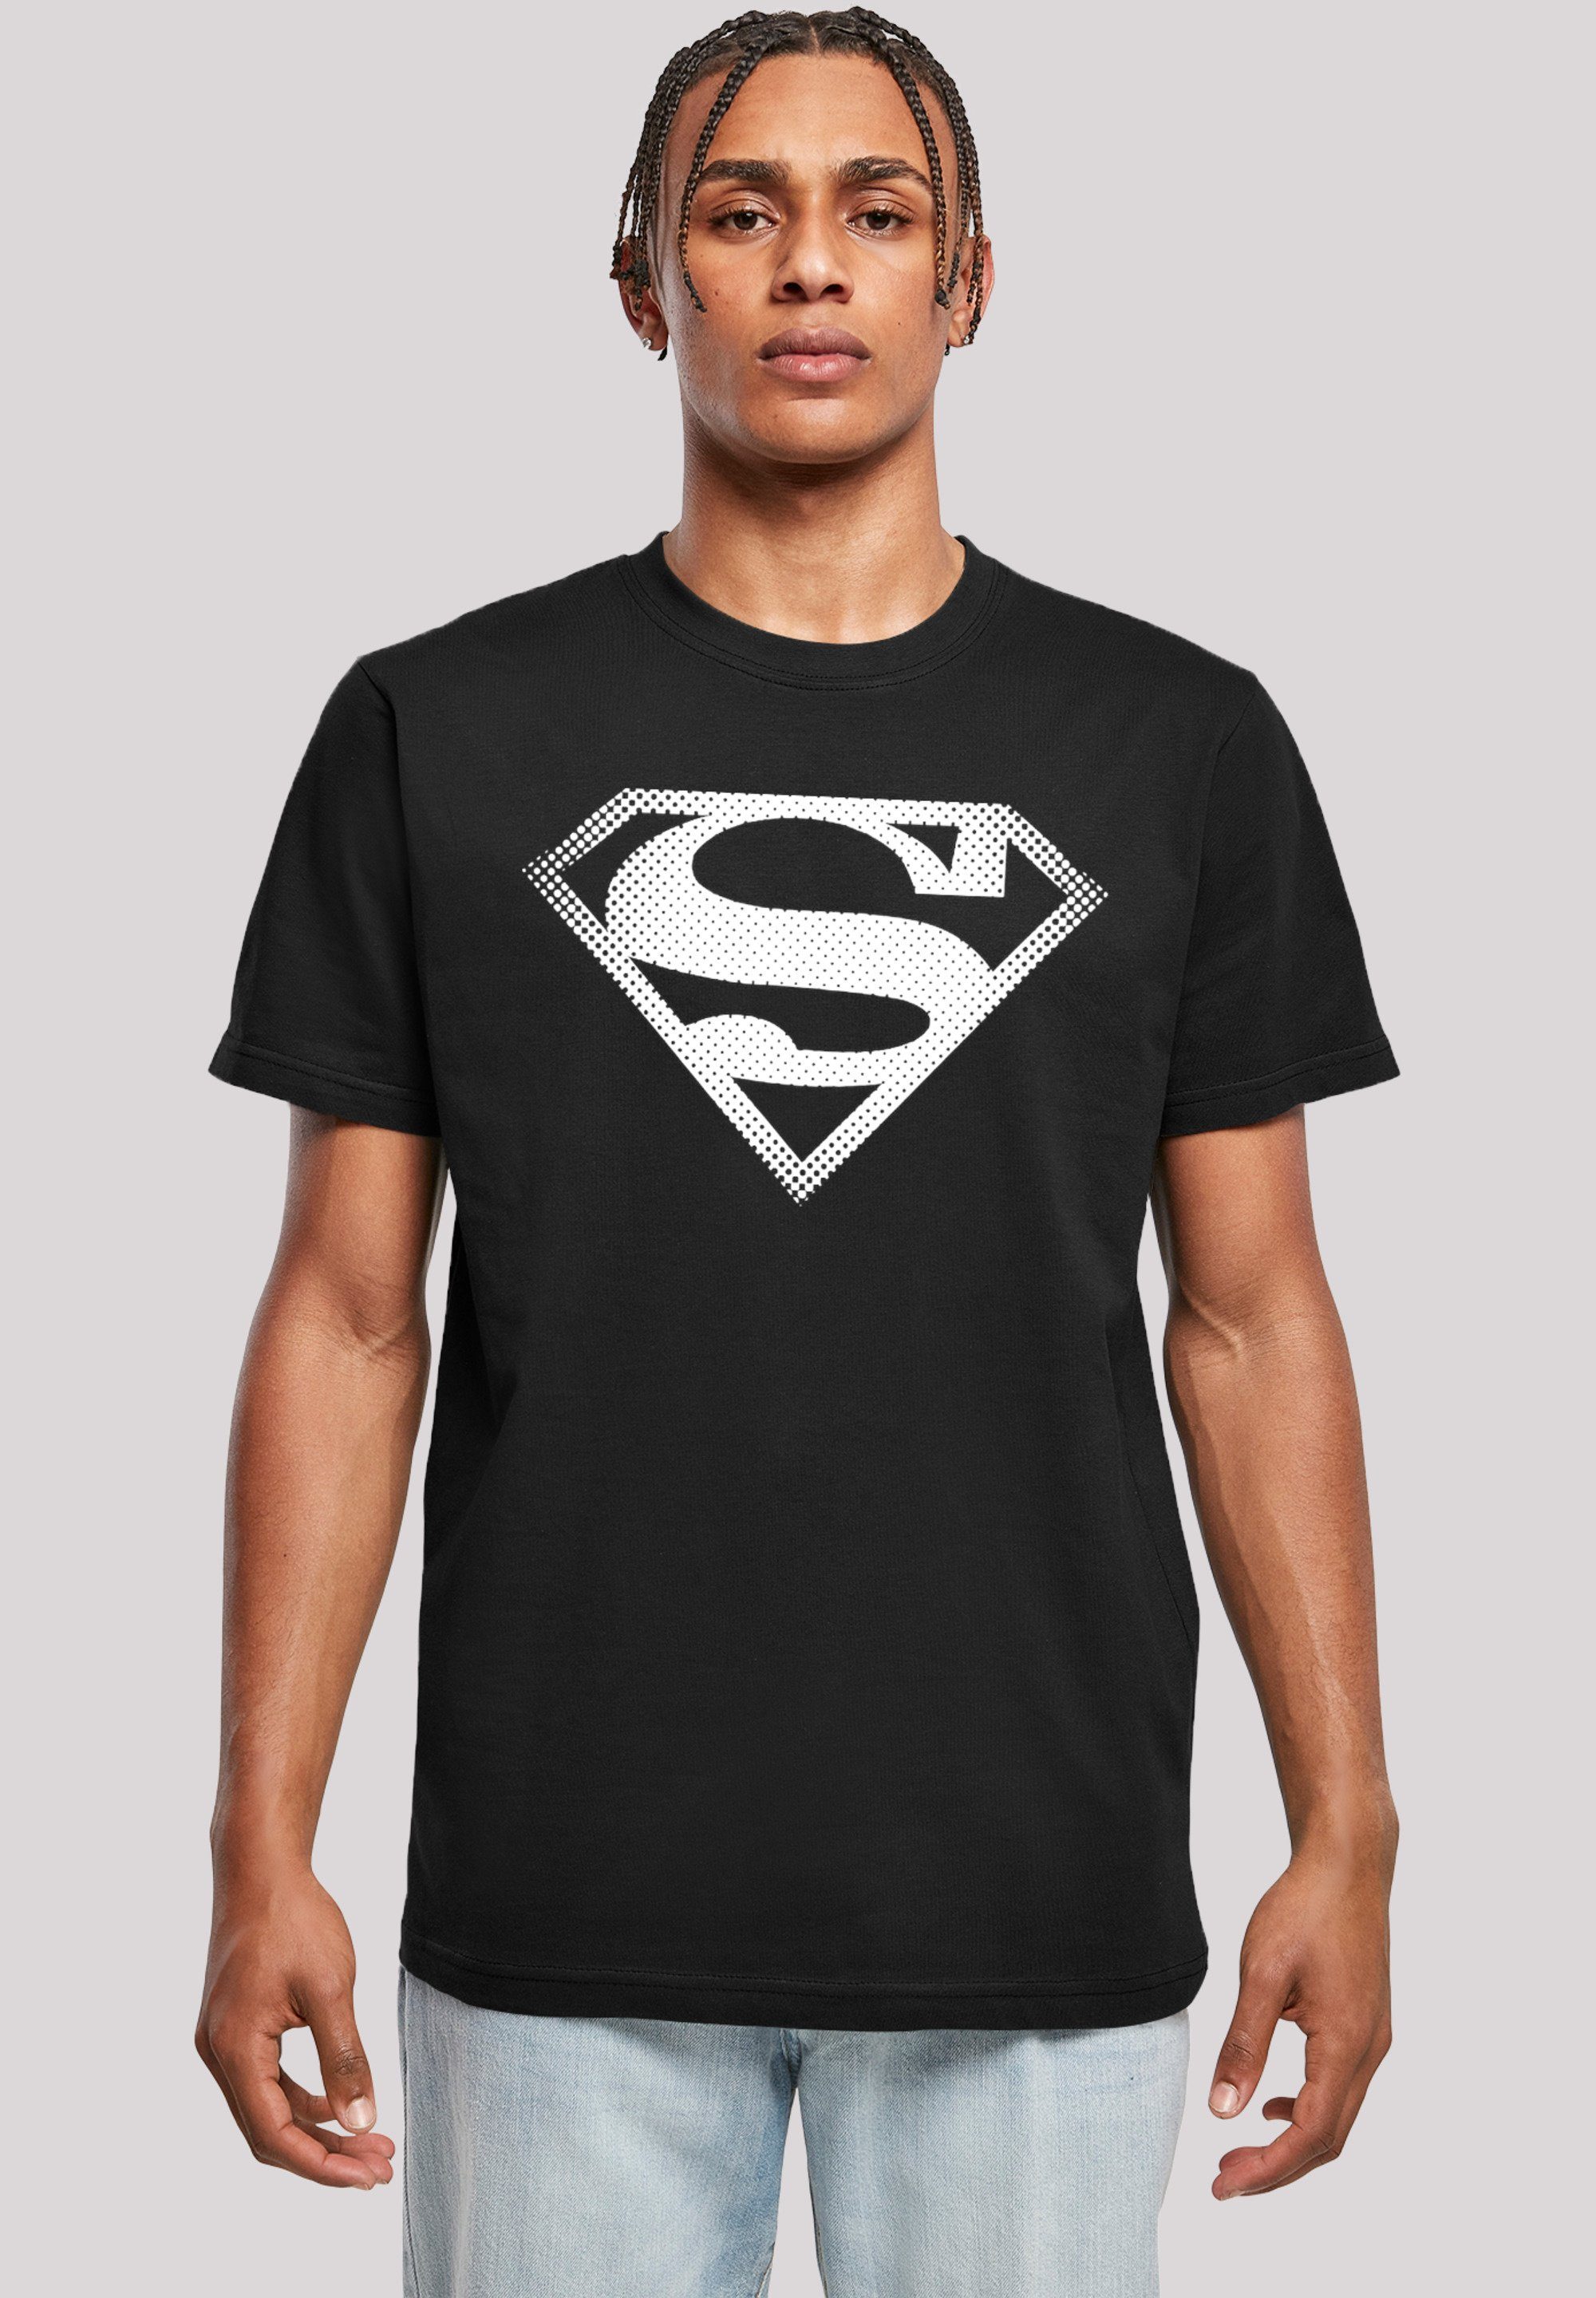 Spot T-Shirt Superman Logo Herren,Premium Comics DC F4NT4STIC Merch,Regular-Fit,Basic,Bedruckt